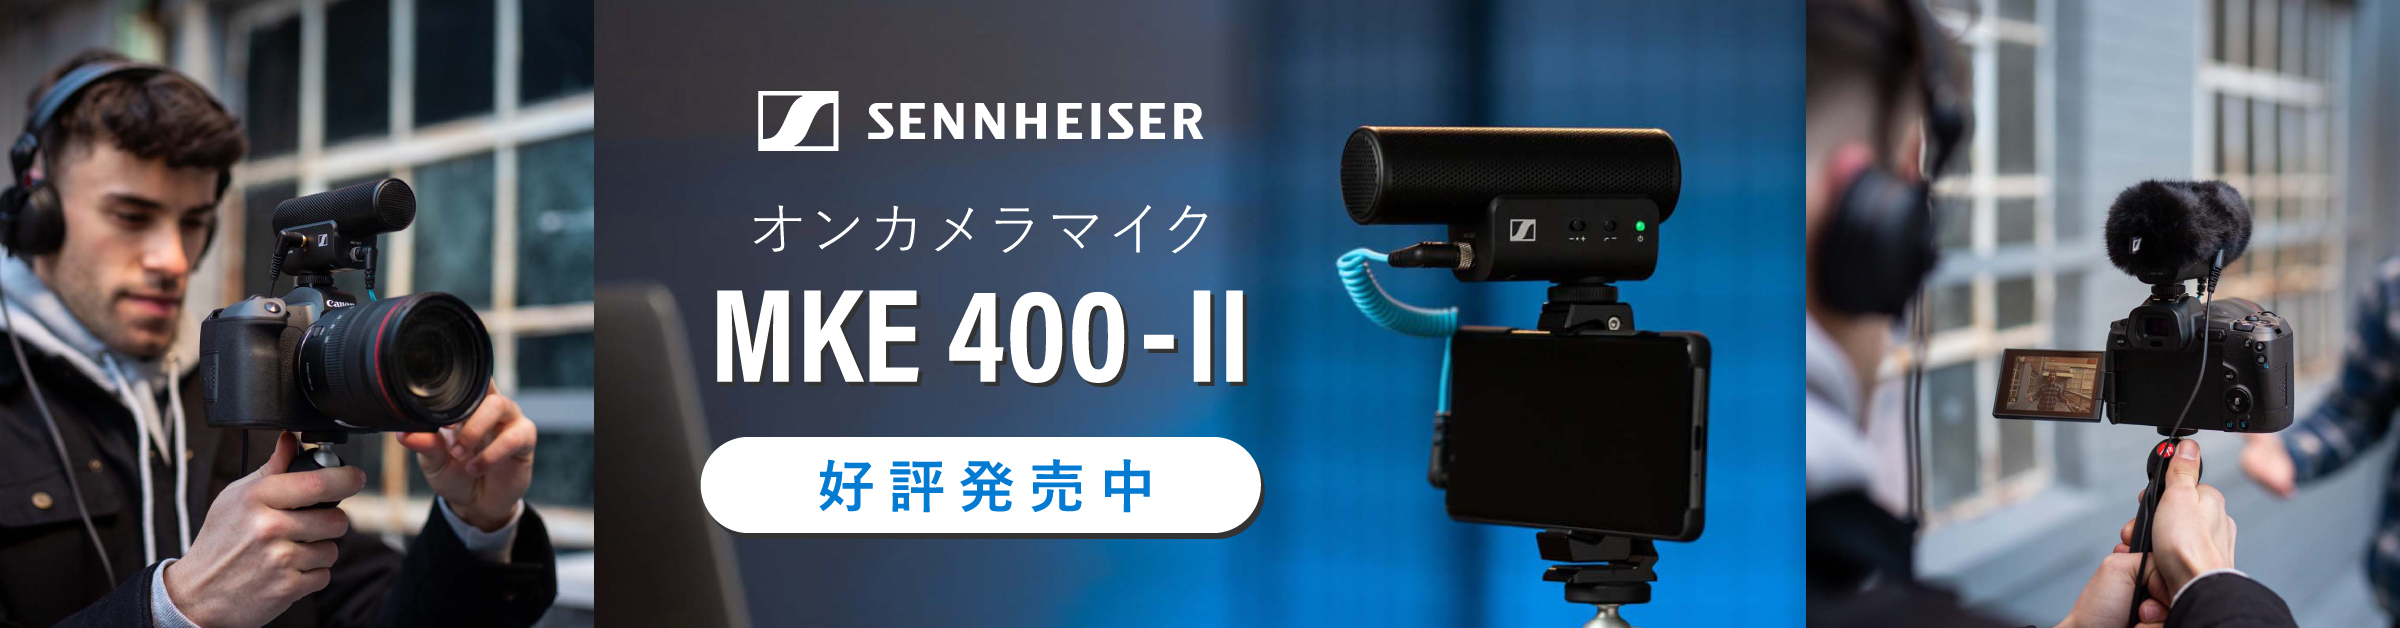 【新製品】ゼンハイザー「MKE 400-IIシリーズ」が発表されました 